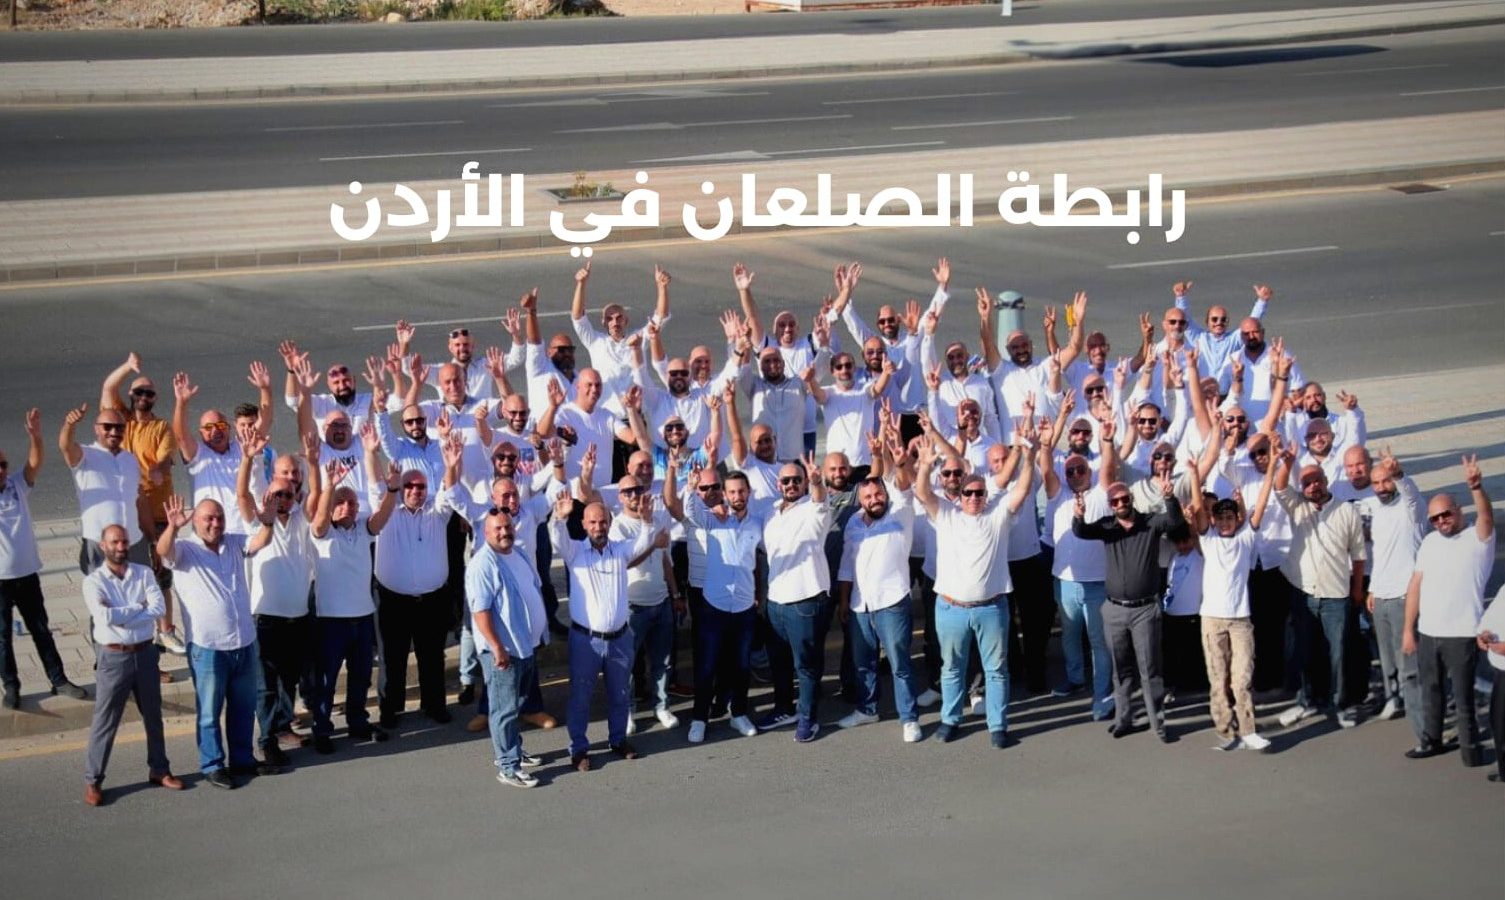 إنشاء “رابطة الصلع” في الأردن وهذه مطالبهم (صور)